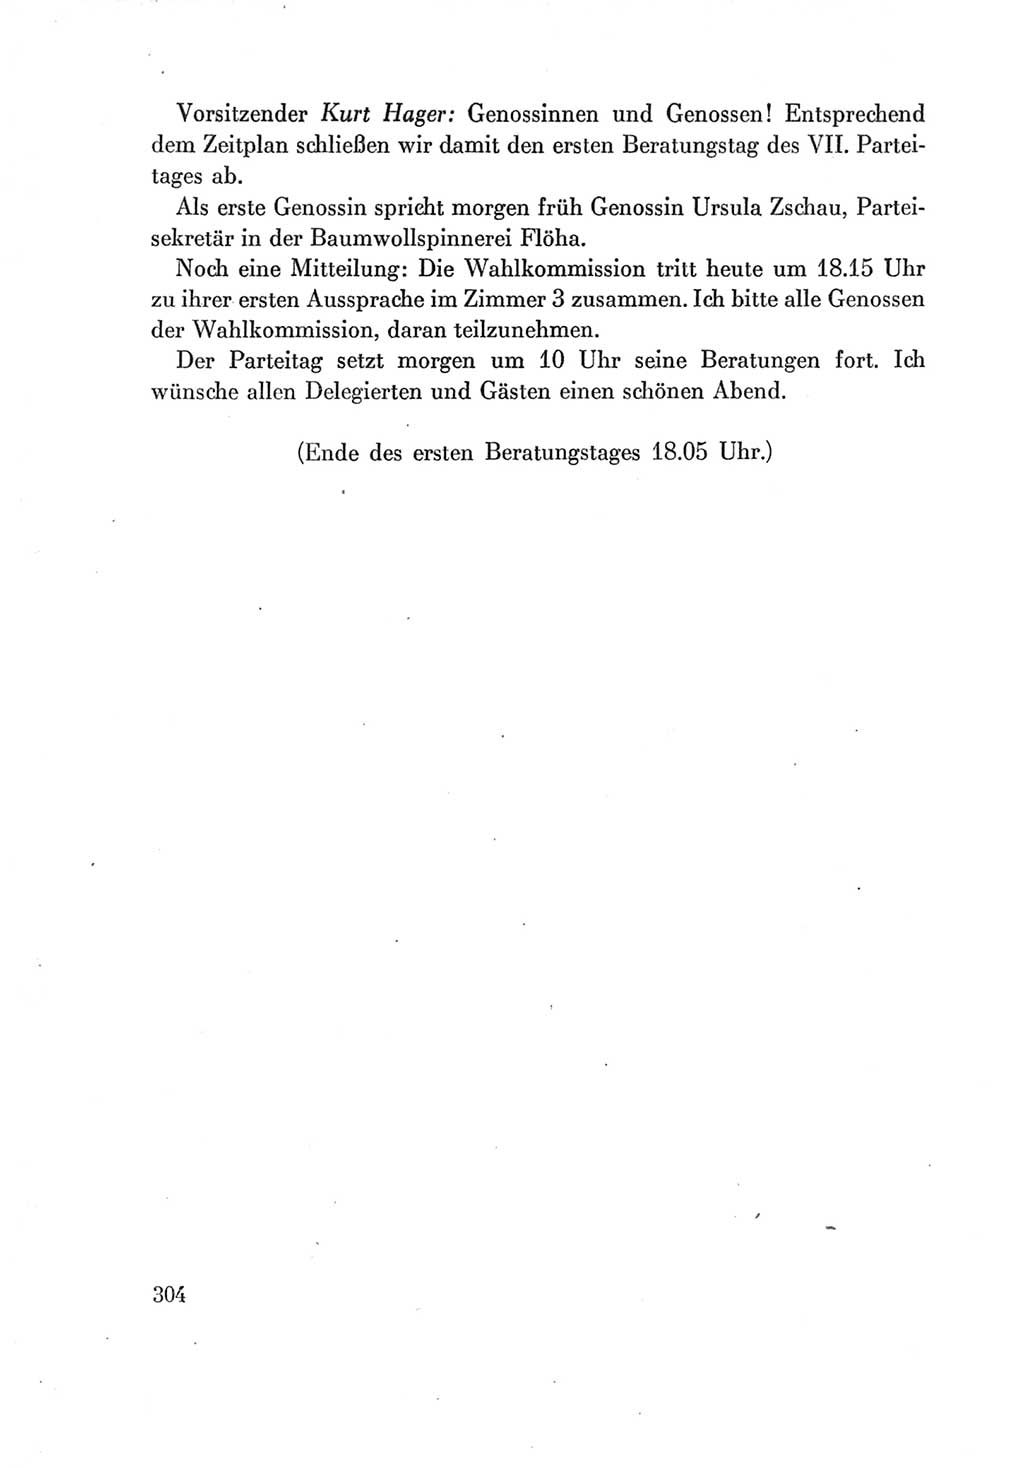 Protokoll der Verhandlungen des Ⅶ. Parteitages der Sozialistischen Einheitspartei Deutschlands (SED) [Deutsche Demokratische Republik (DDR)] 1967, Band Ⅰ, Seite 304 (Prot. Verh. Ⅶ. PT SED DDR 1967, Bd. Ⅰ, S. 304)